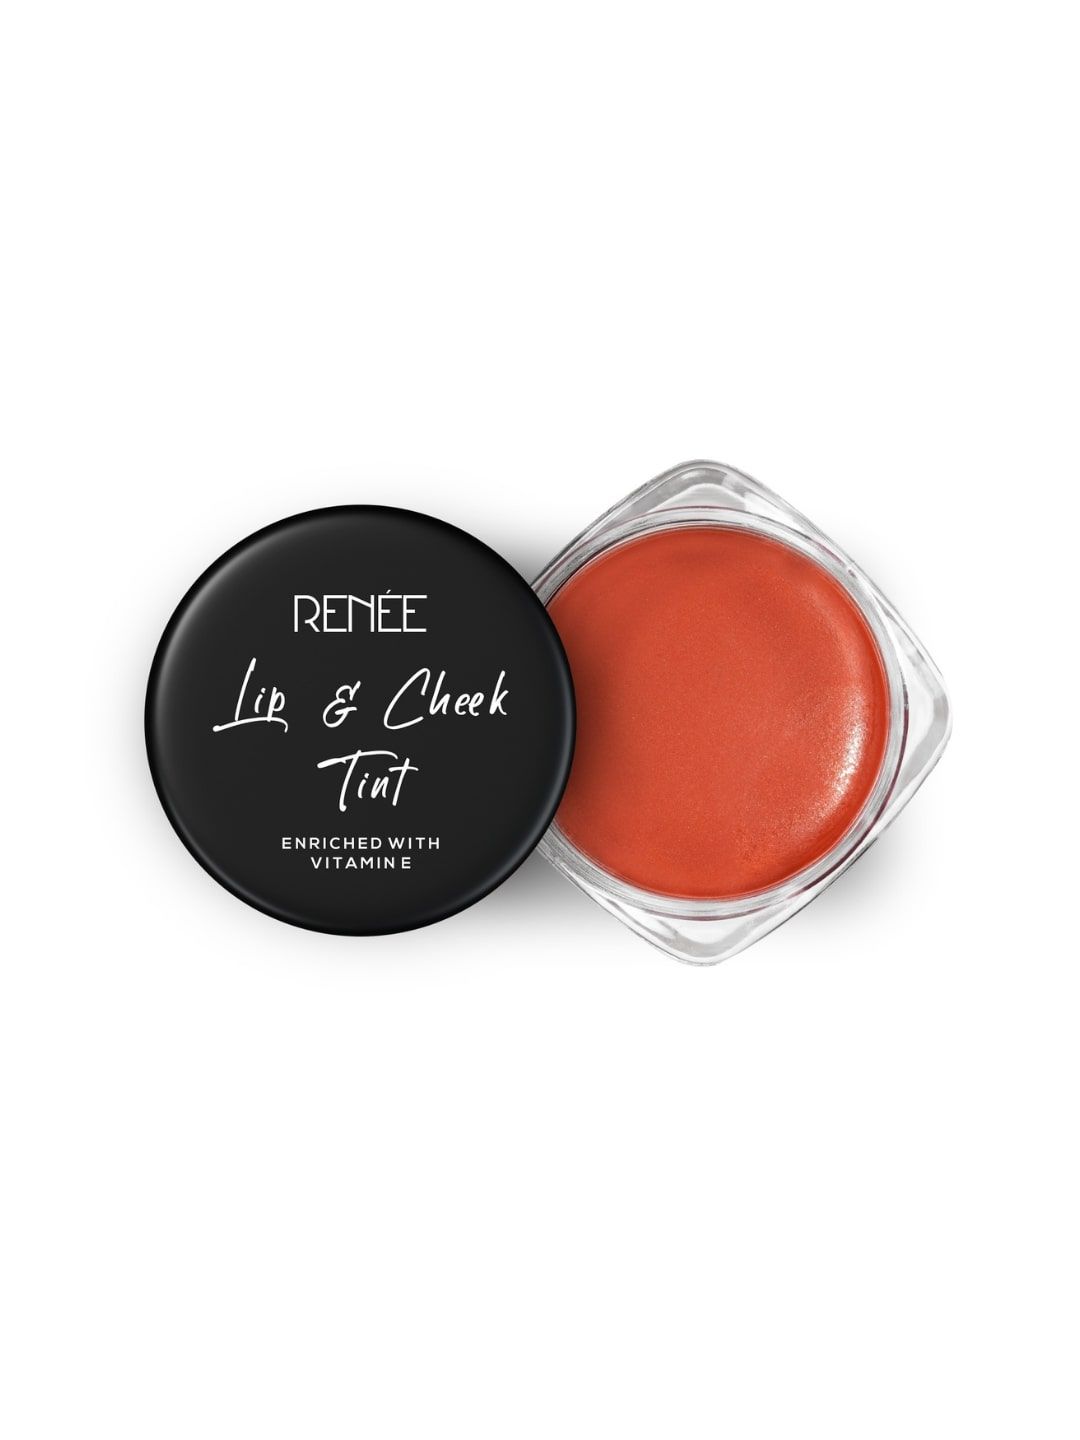 RENEE Lip & Cheek Tint - Caramel Nude 8g Price in India